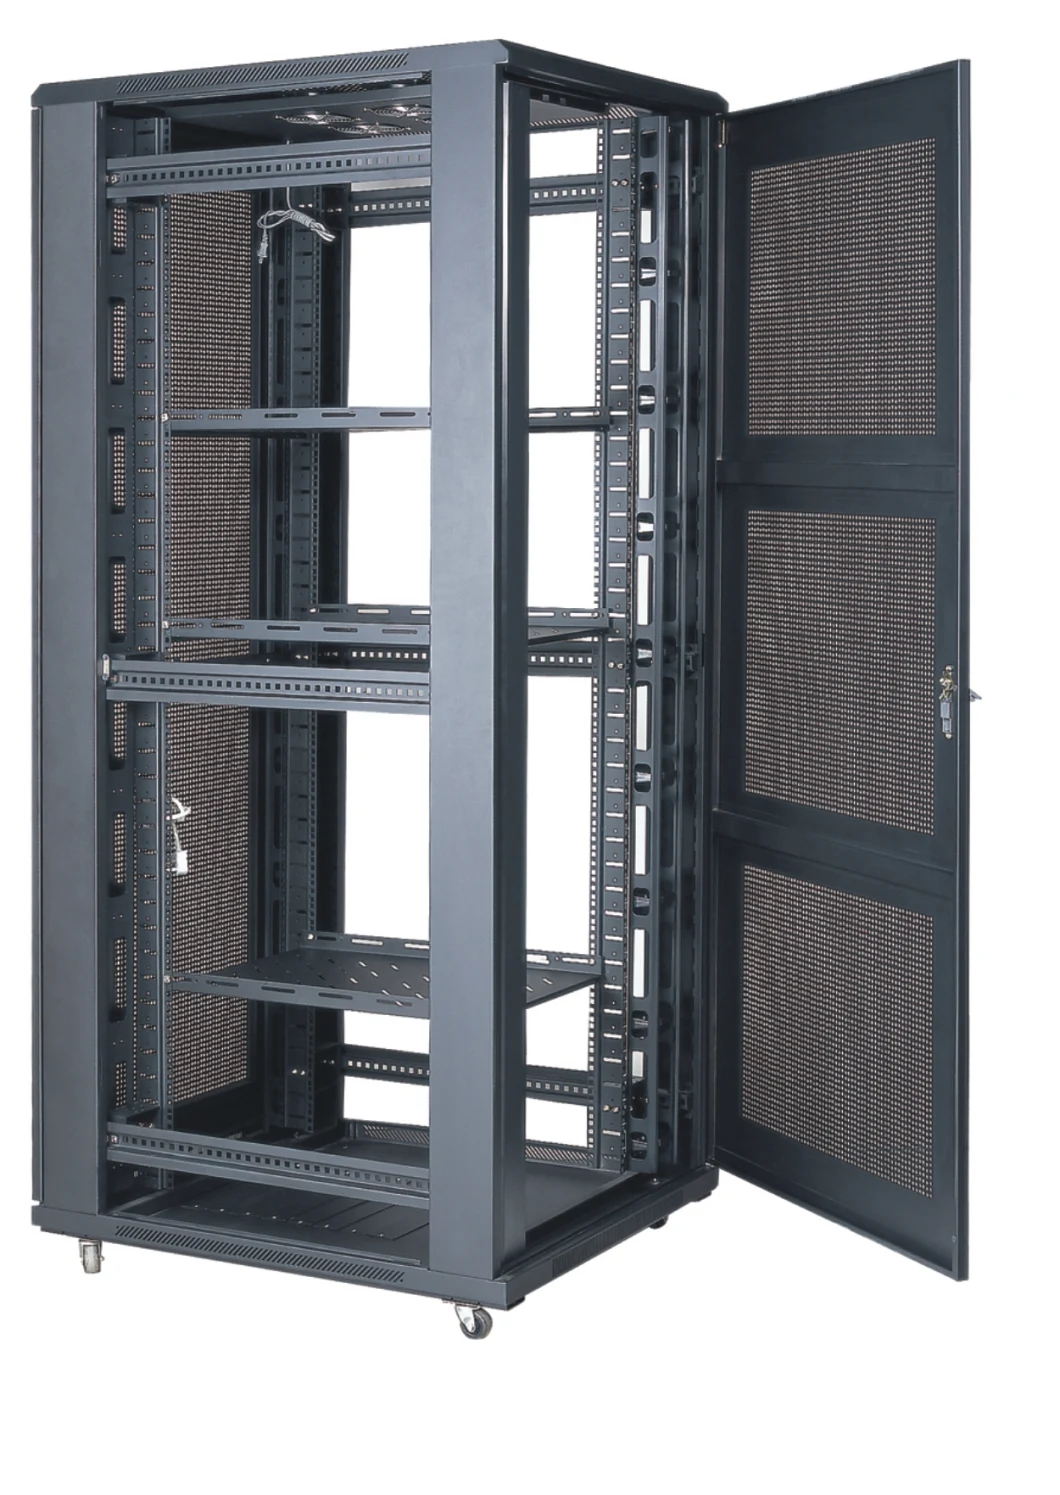 19 Inch Data Center Server Rack Floor Standing Glass Door, Fllor Cabinet, Server Cabinet, Wall Mount Cabinet, Network Cabinet